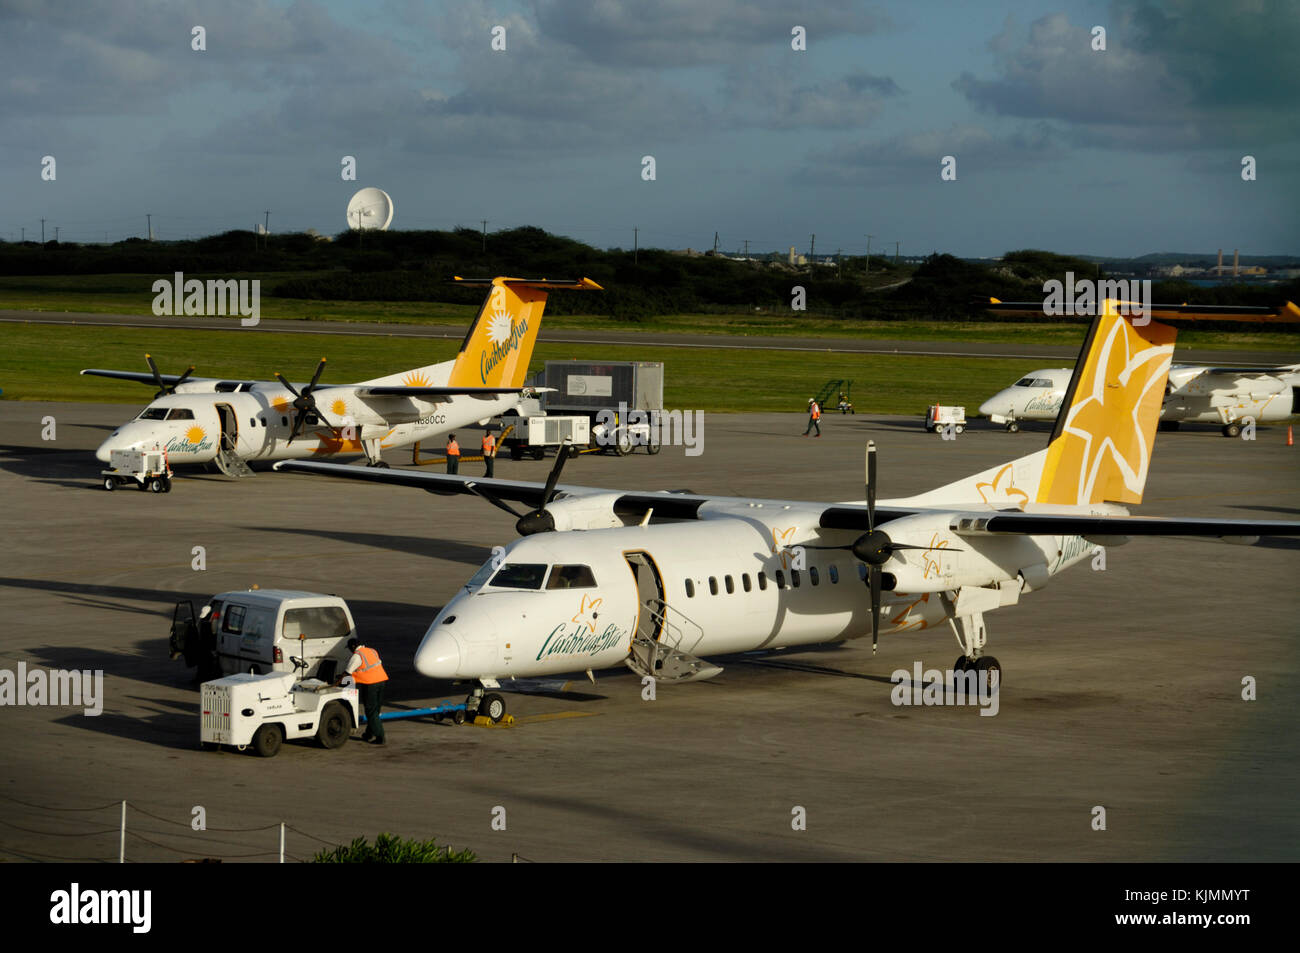 Männer tragen gelbe High viz tabards zu Fuß zu einem Schlepper mit einer Anhängerzugvorrichtung, Caribbean Star Airlines Bombardier DHC-8 mit einer Caribbean Sun Airlines DHC-8 mit Stockfoto